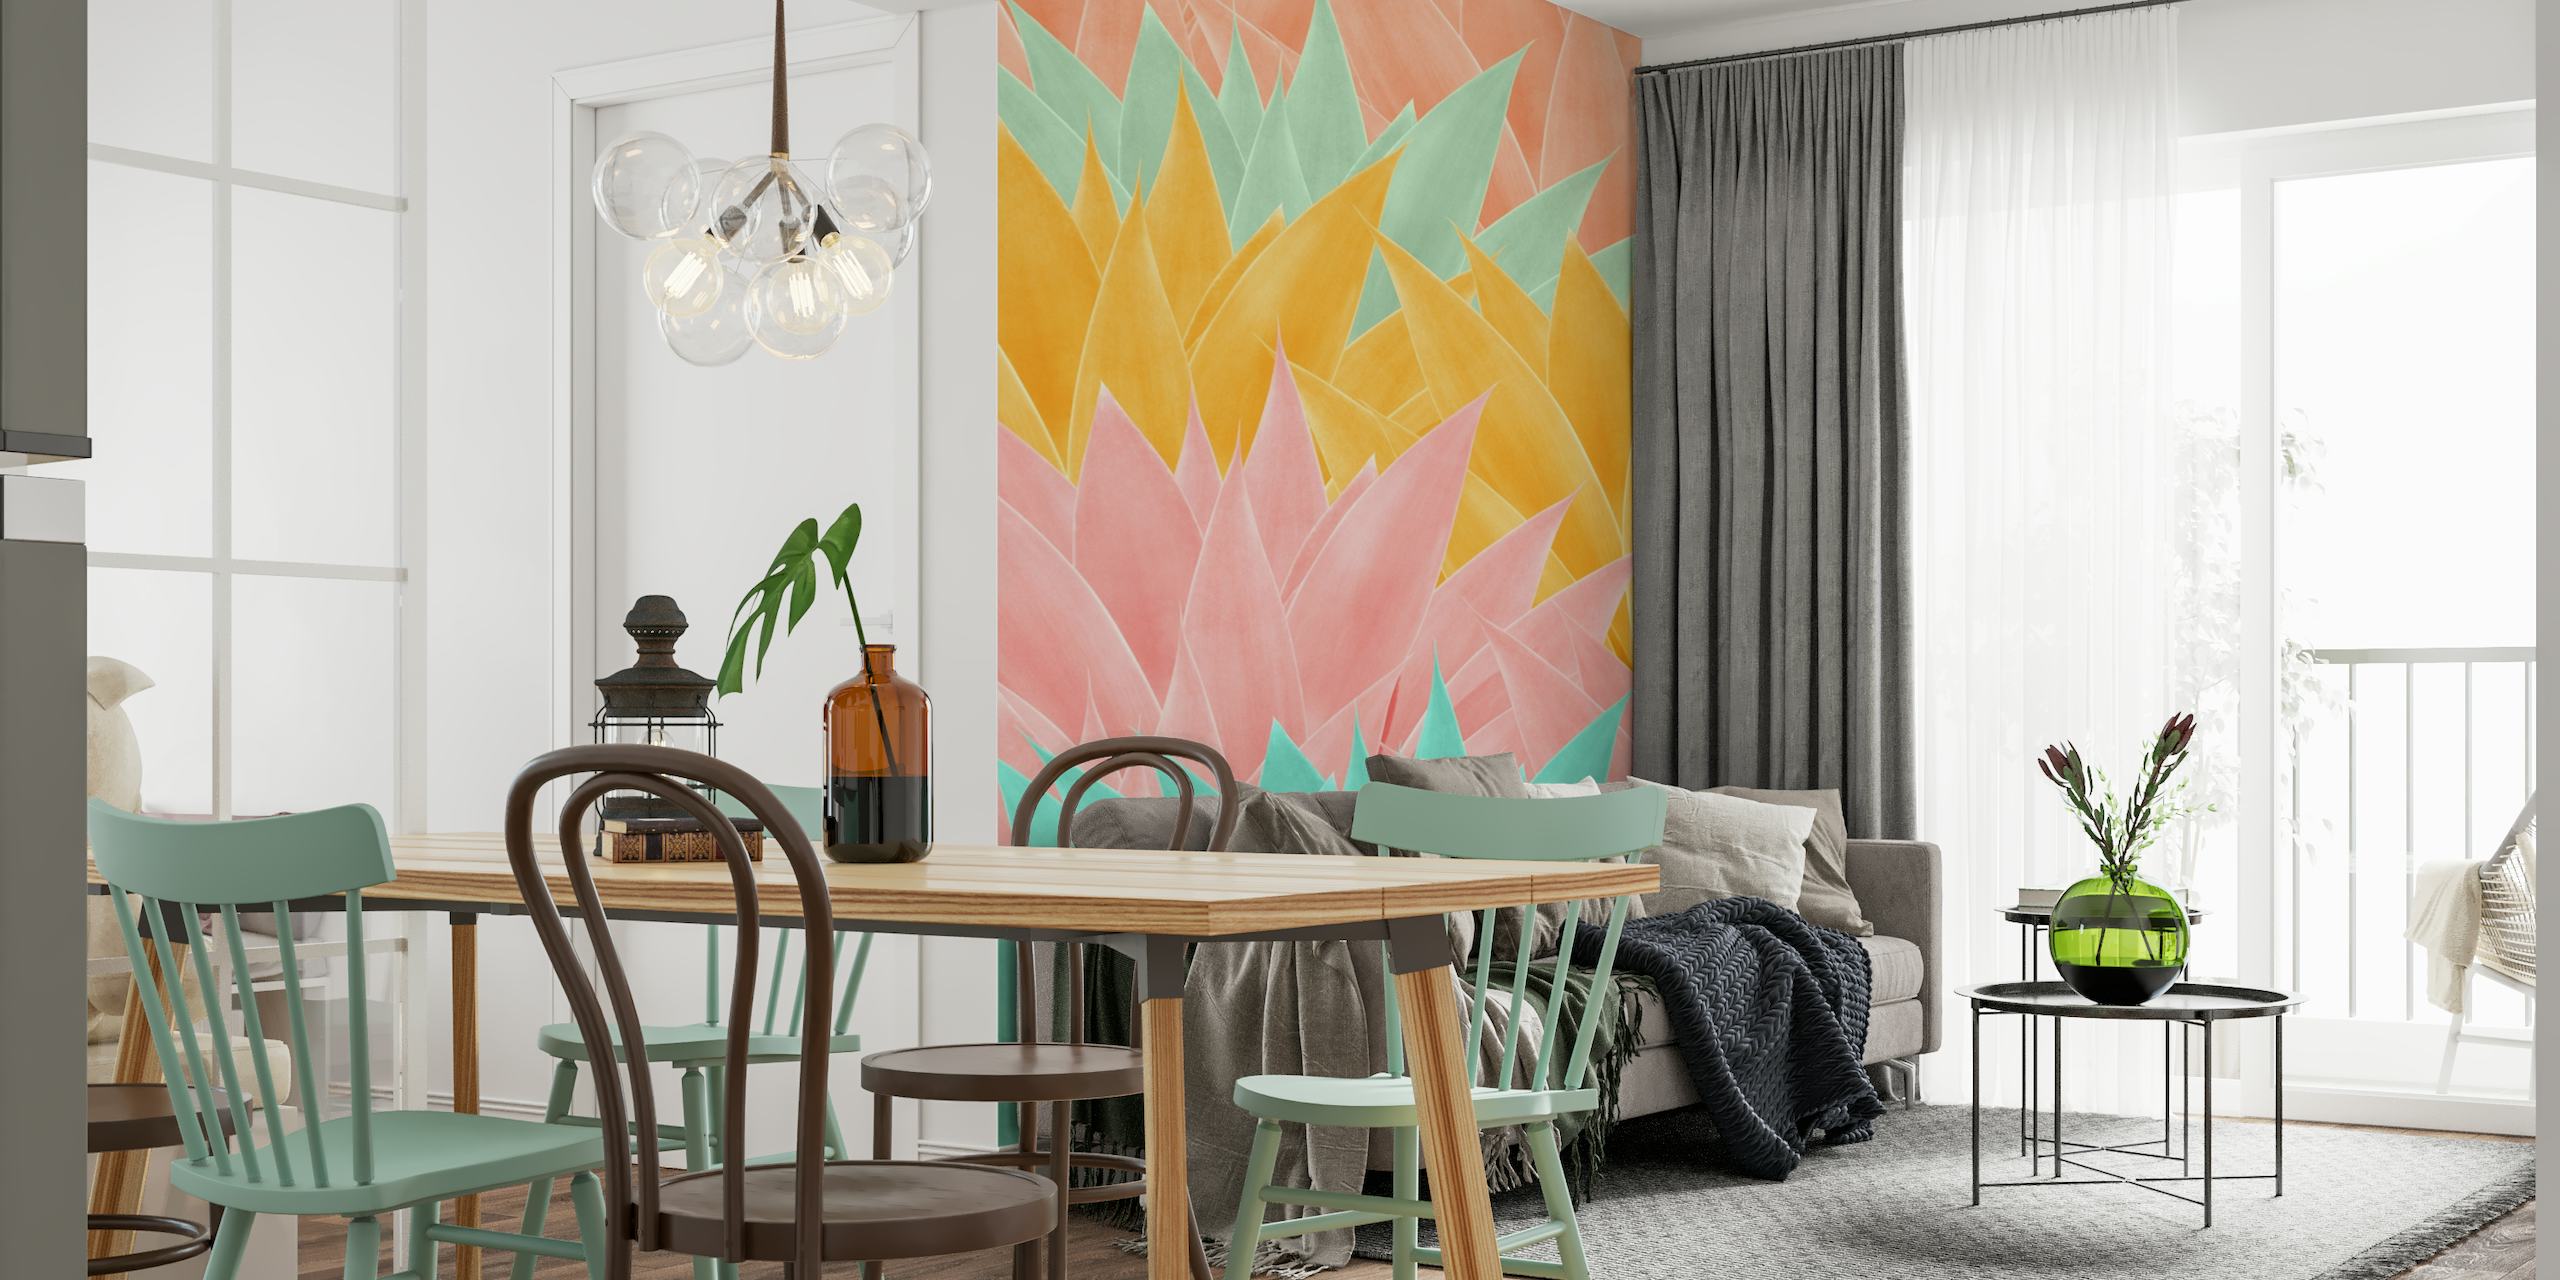 Farbenfrohes Wandgemälde mit Agavenblattmuster in Rosa-, Gelb- und Aquamarintönen für eine moderne Inneneinrichtung.